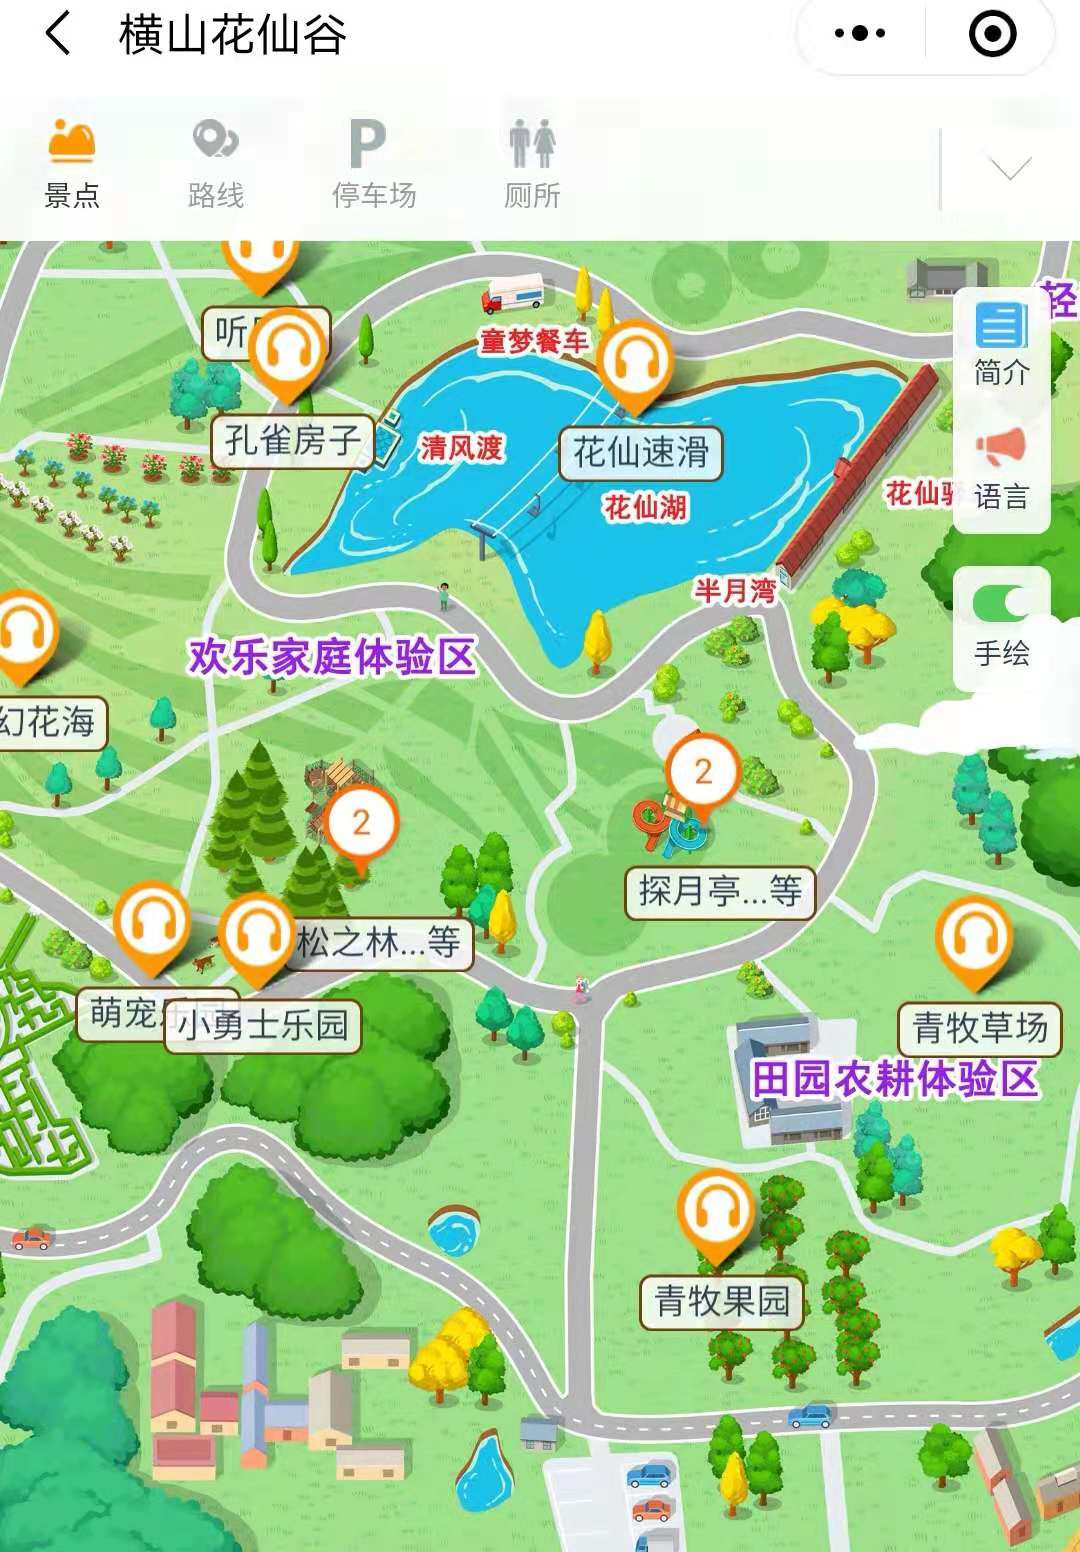 2021横山花仙谷景区手绘地图,电子导览,语音讲解系统上线